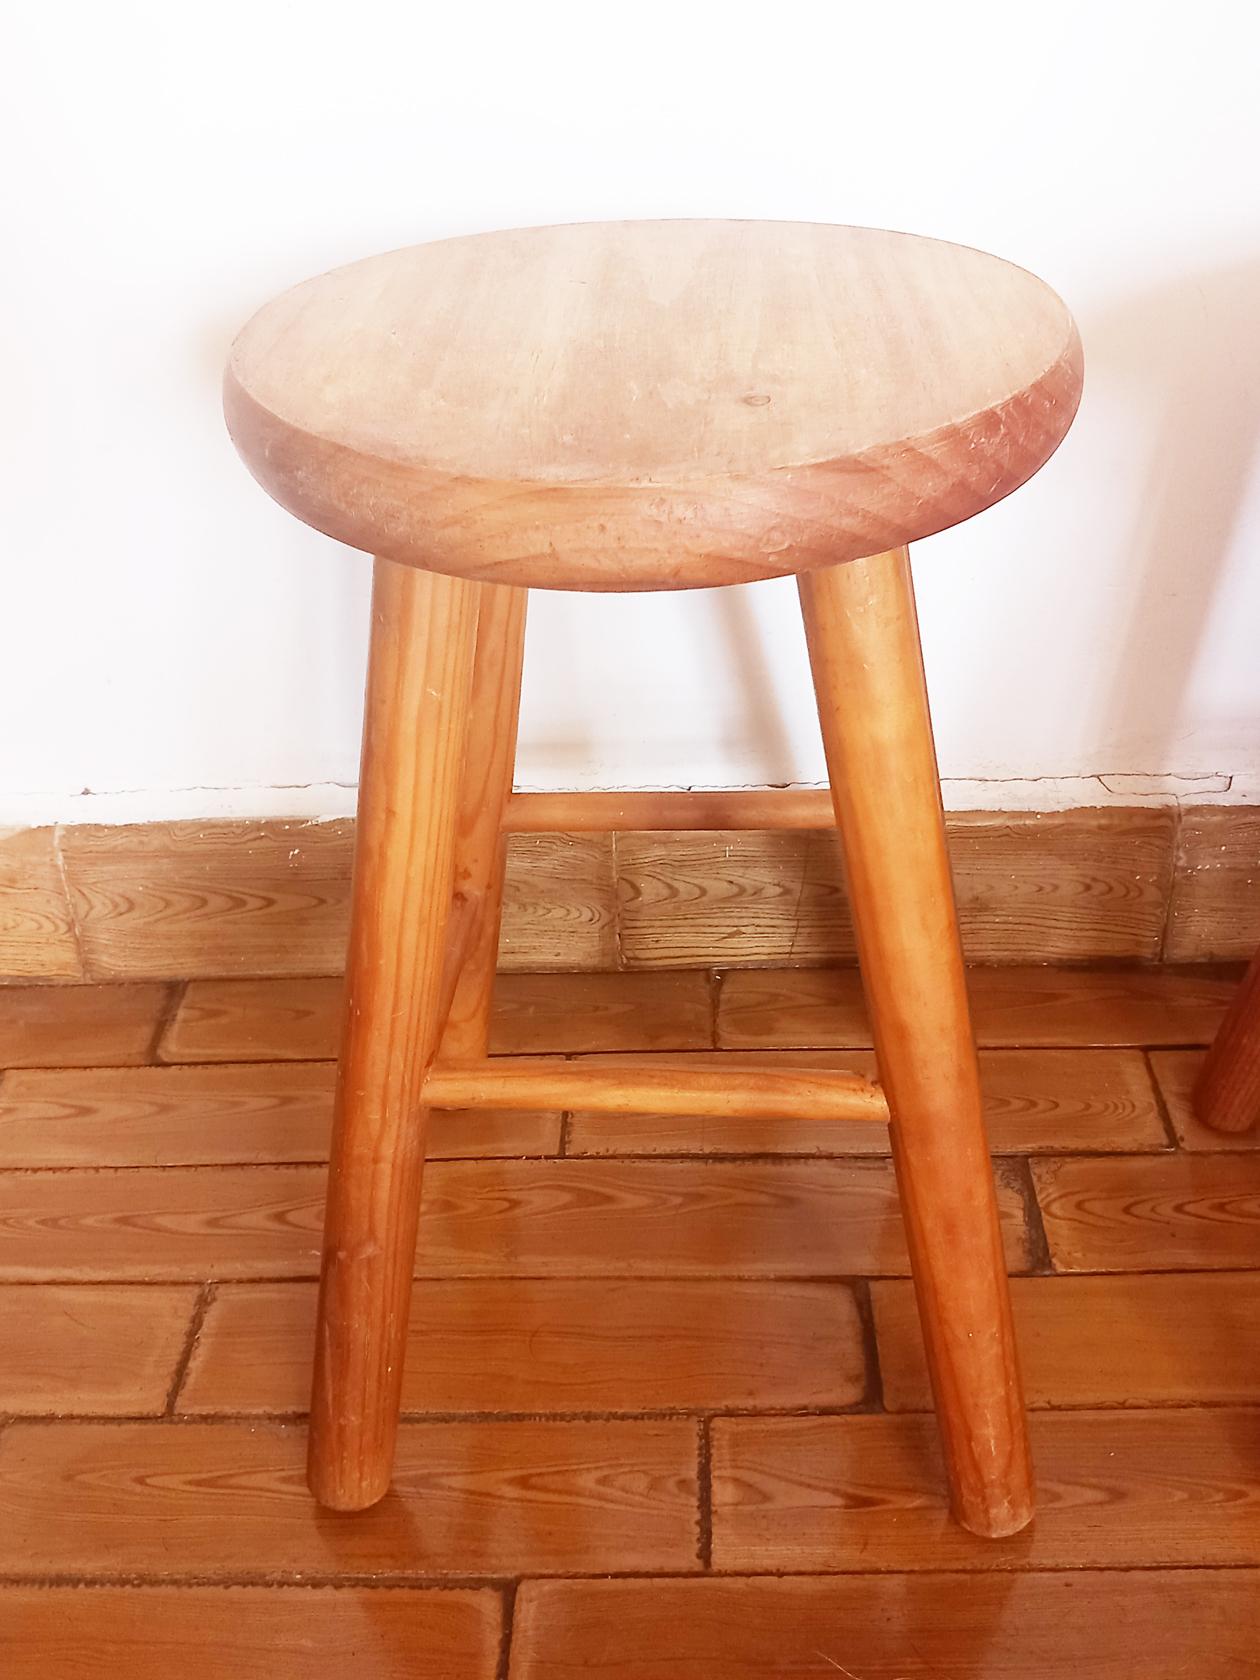 natural wood stools